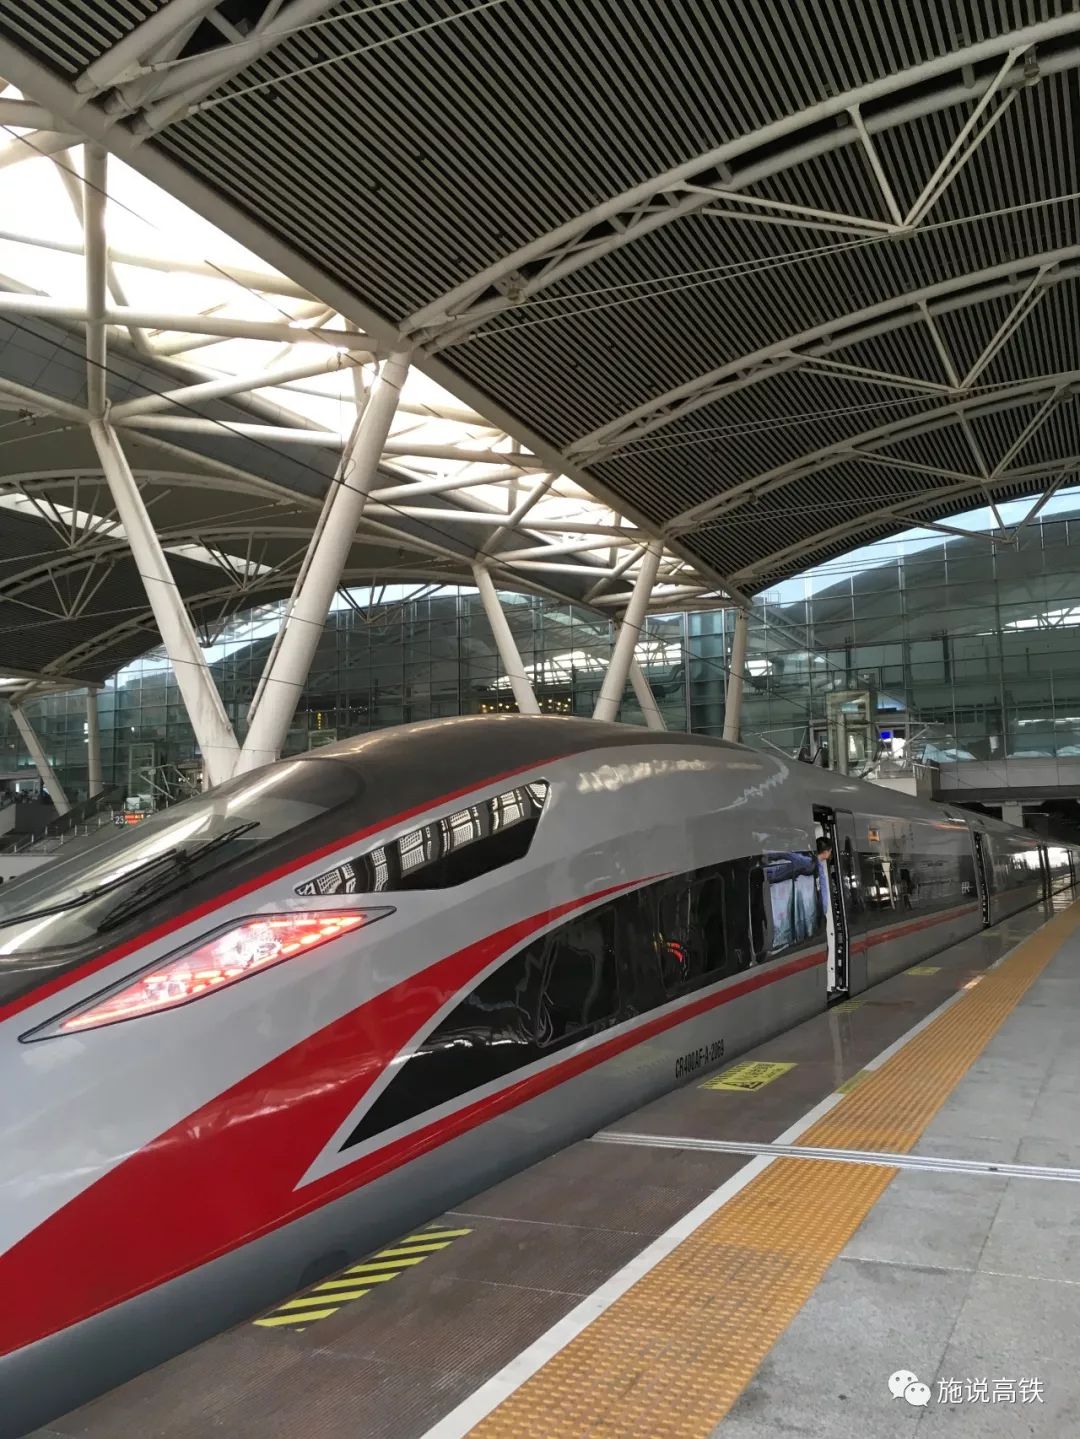 梅汕客专开通运营 粤东北地区正式接入全国高铁网络-千龙网·中国首都网